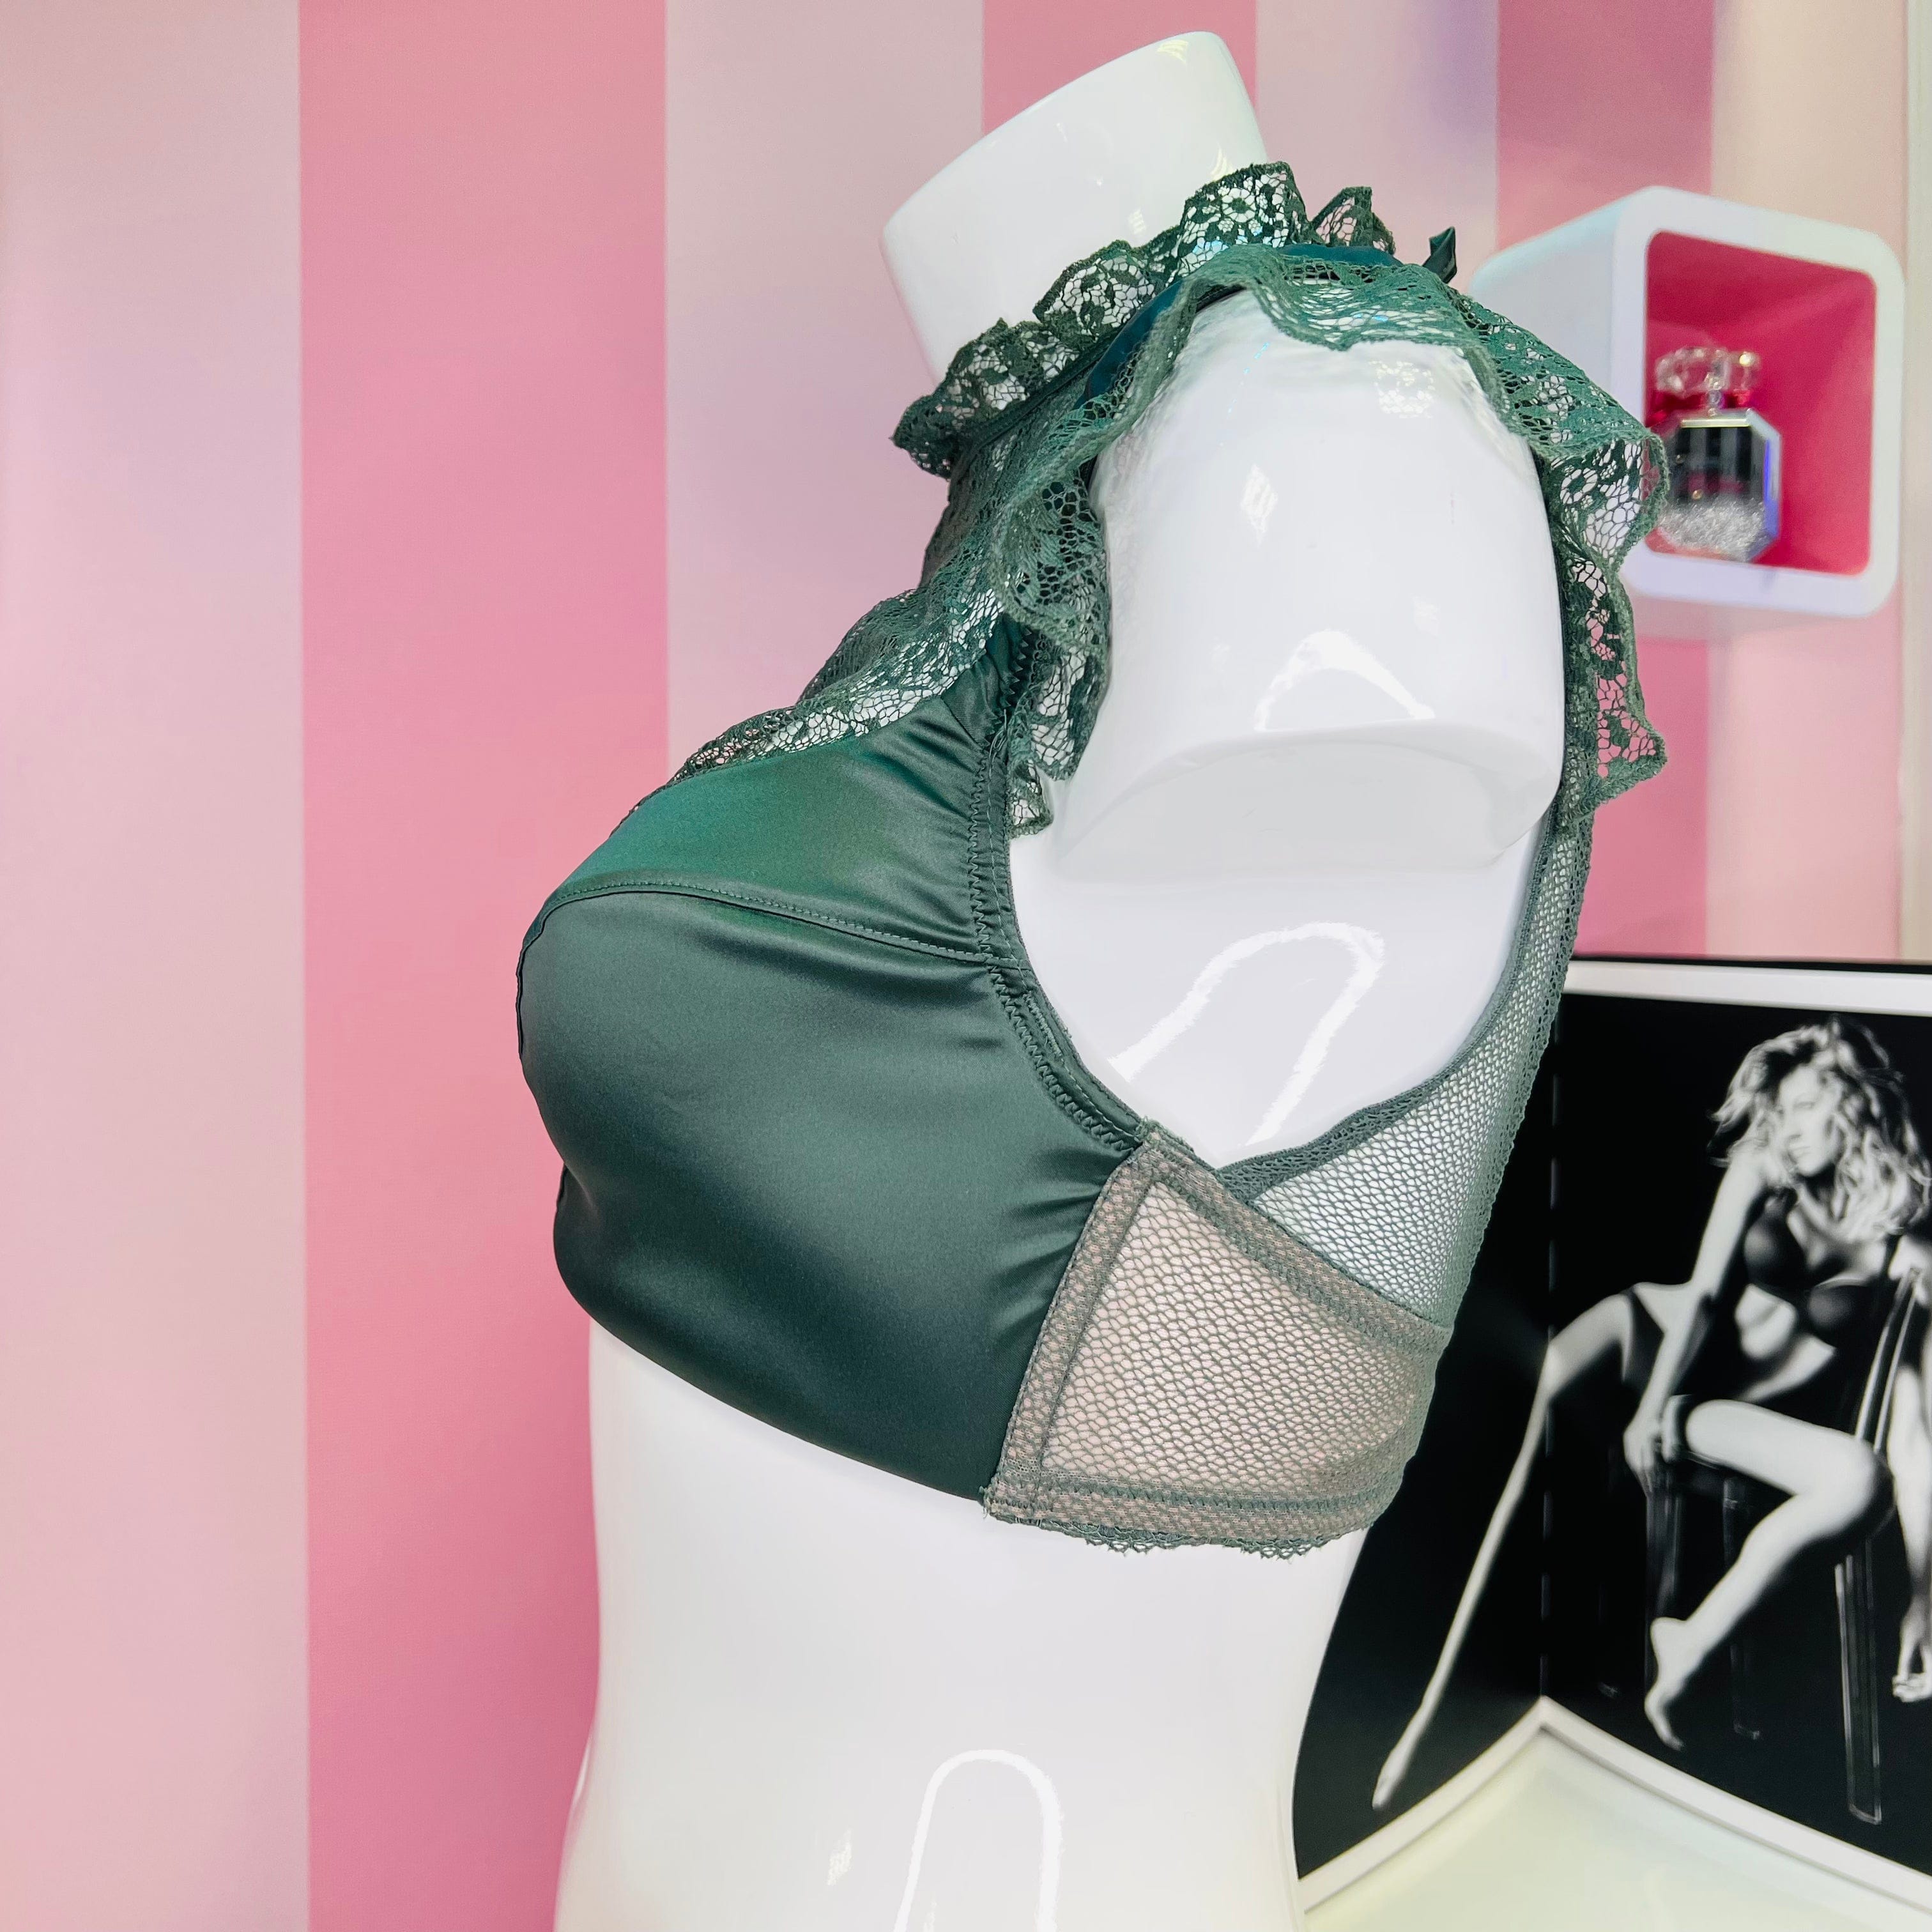 Podprsenka s krajkou a zavazováním za krkem - Podprsenky Victoria’s Secret